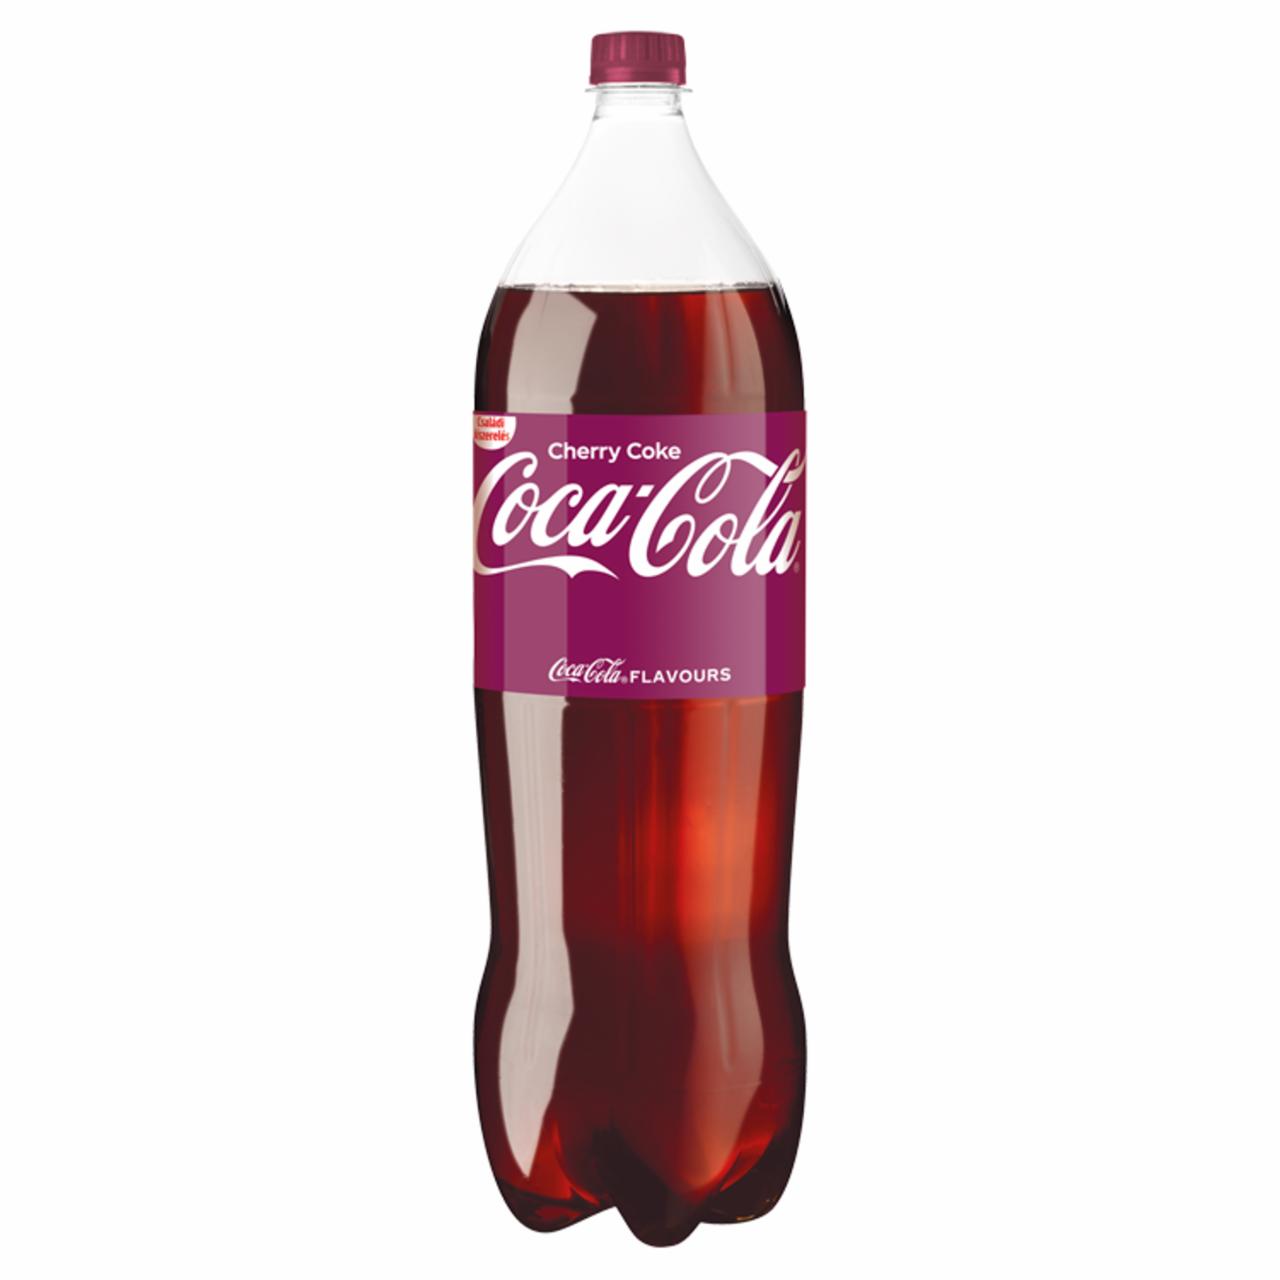 Képek - Coca-Cola Cherry Coke colaízű szénsavas üdítőital cseresznye ízesítéssel 2 l